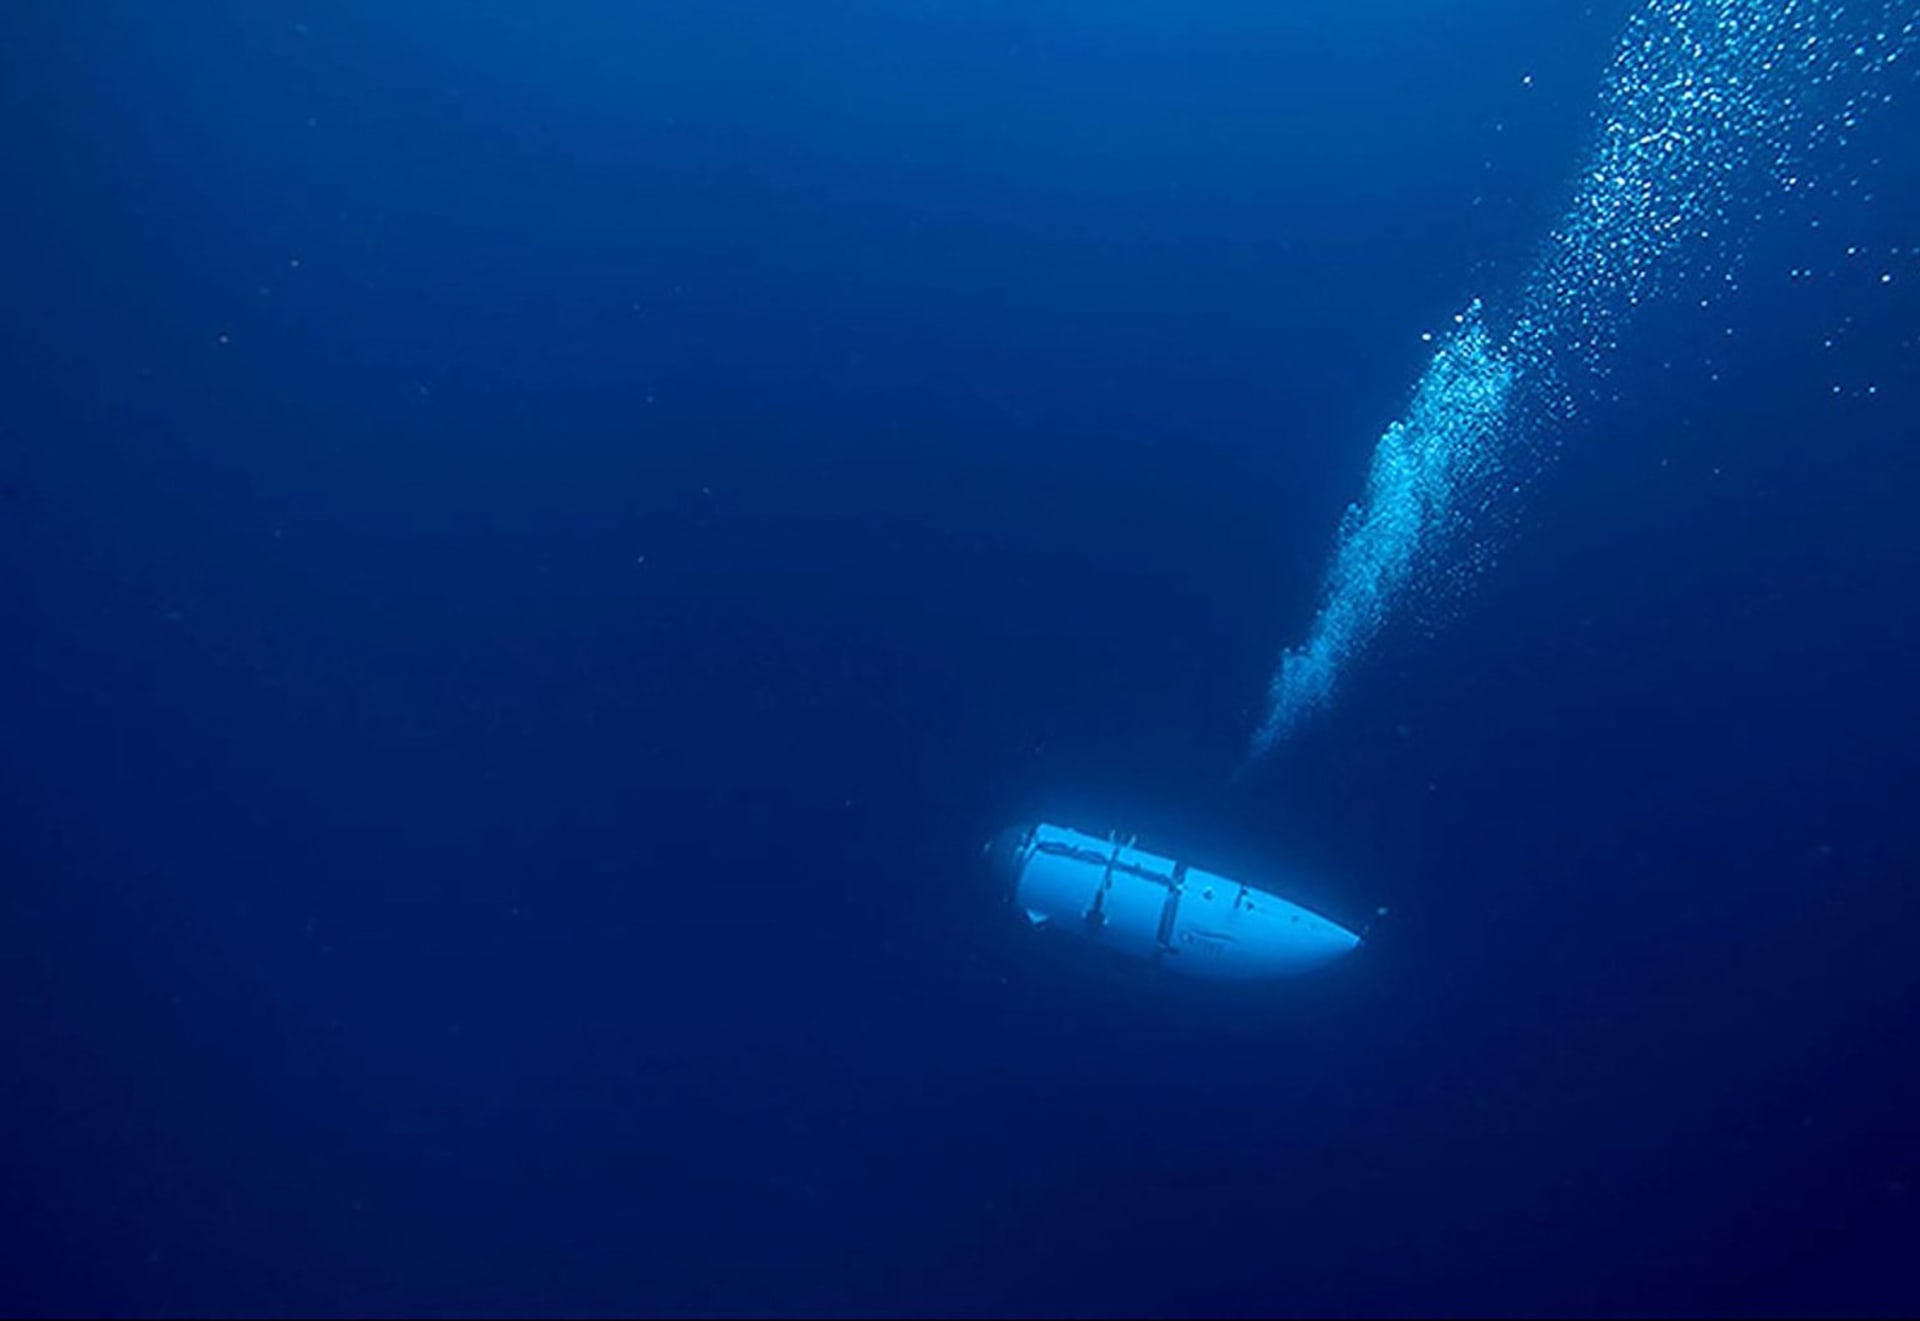 Ponorka Titan společnosti OceanGate Expeditions během klesání k mořskému dnu